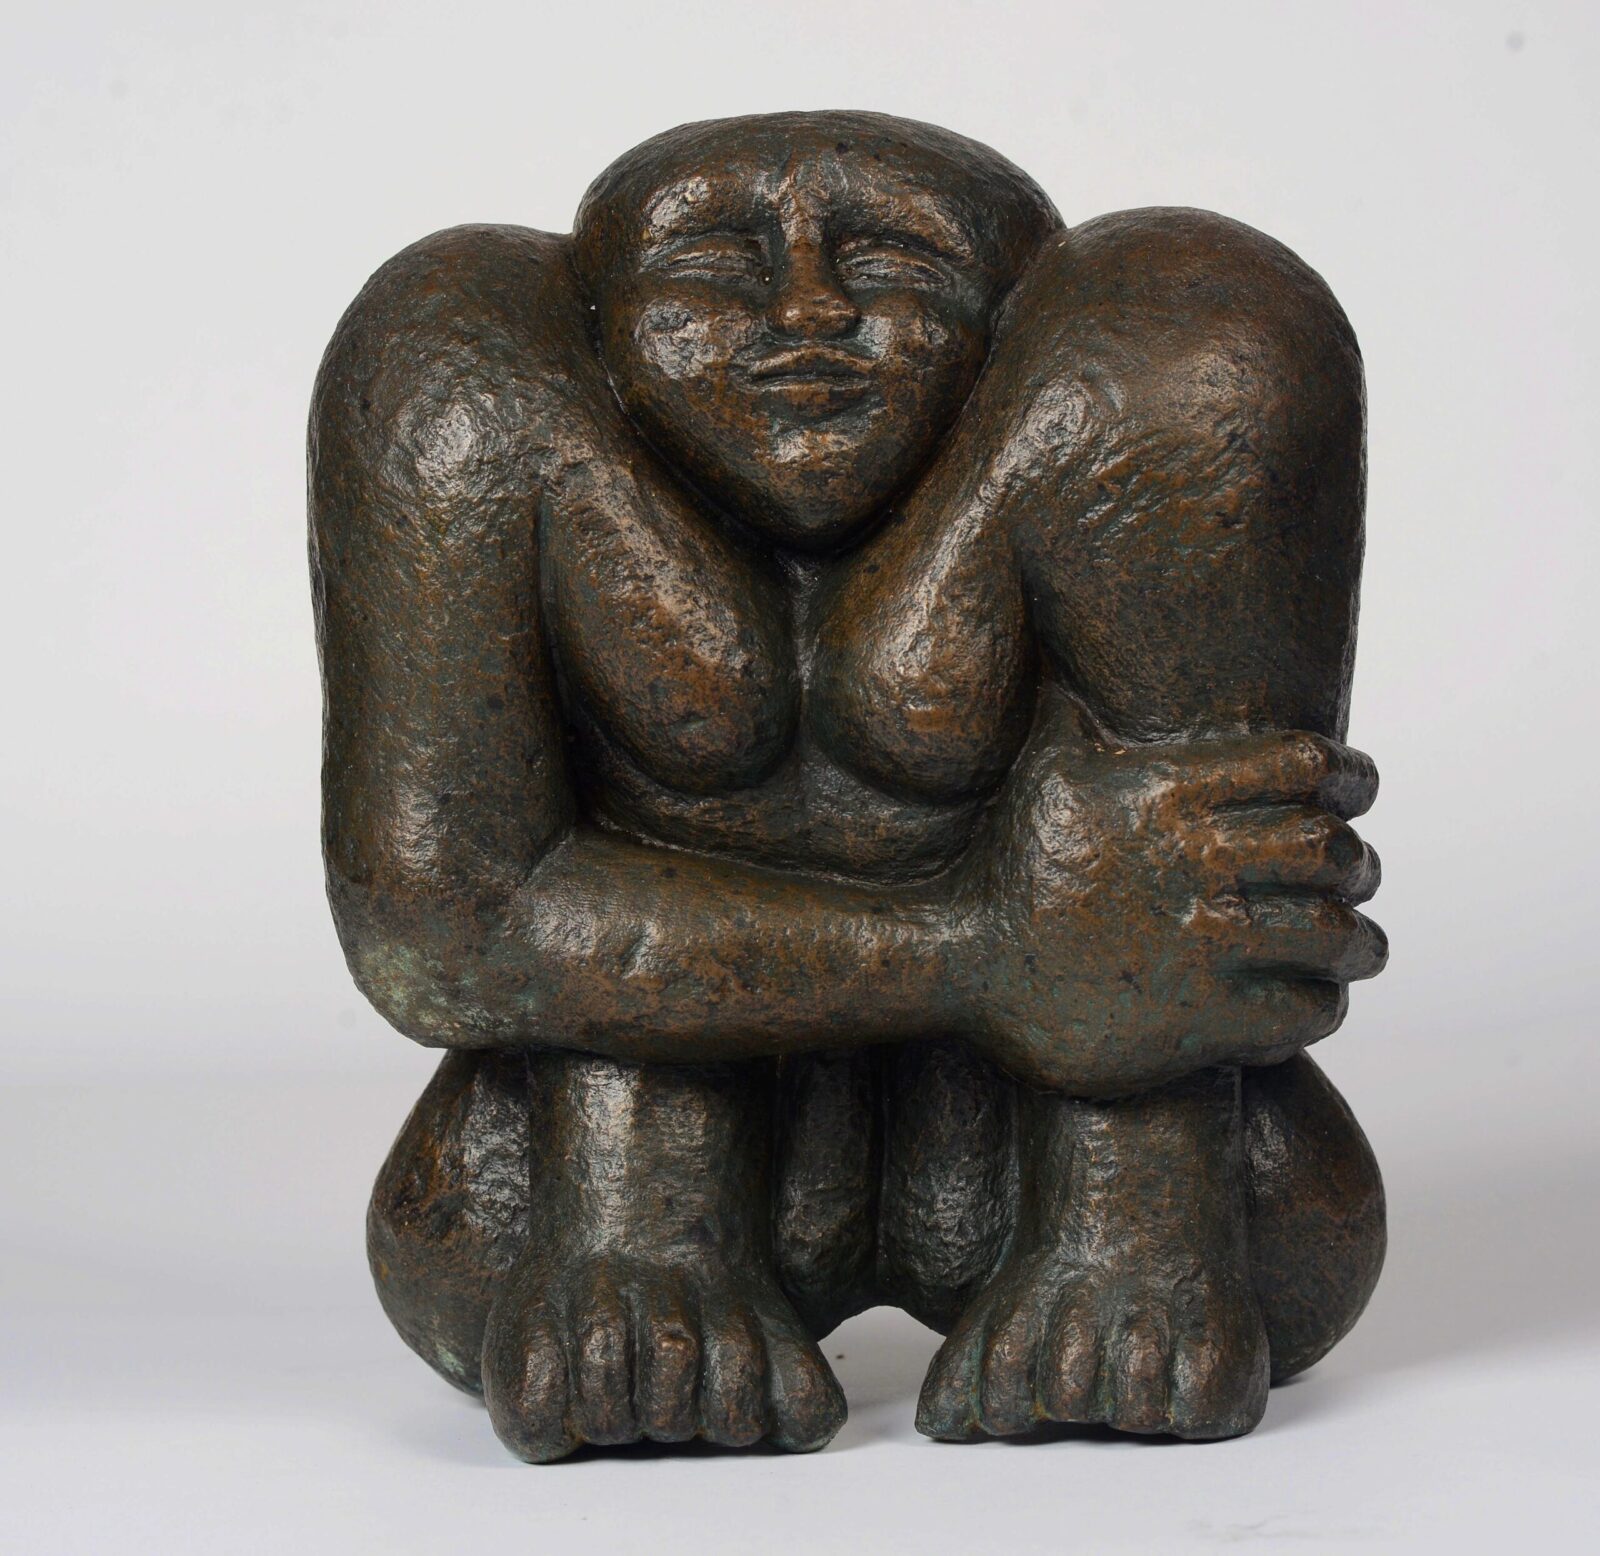 modern bronze sculpture of a compact sitting figure